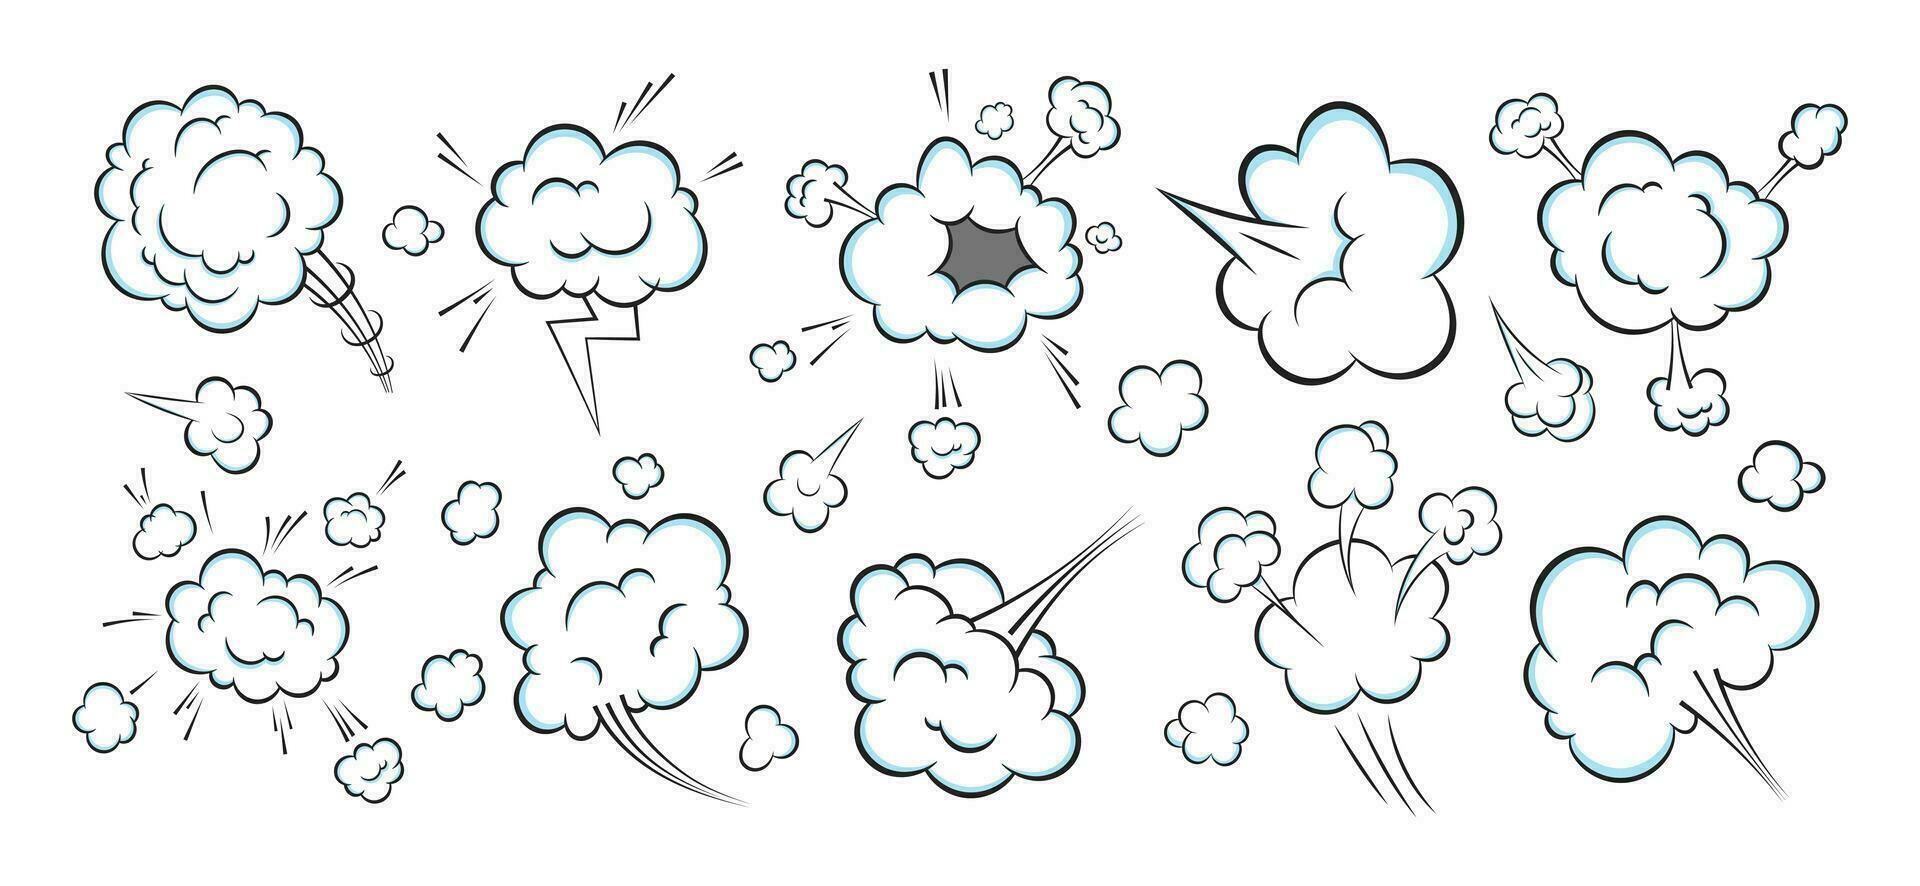 odeur pop art bande dessinée dessin animé pet nuage plat style design illustration vectorielle ensemble. vecteur